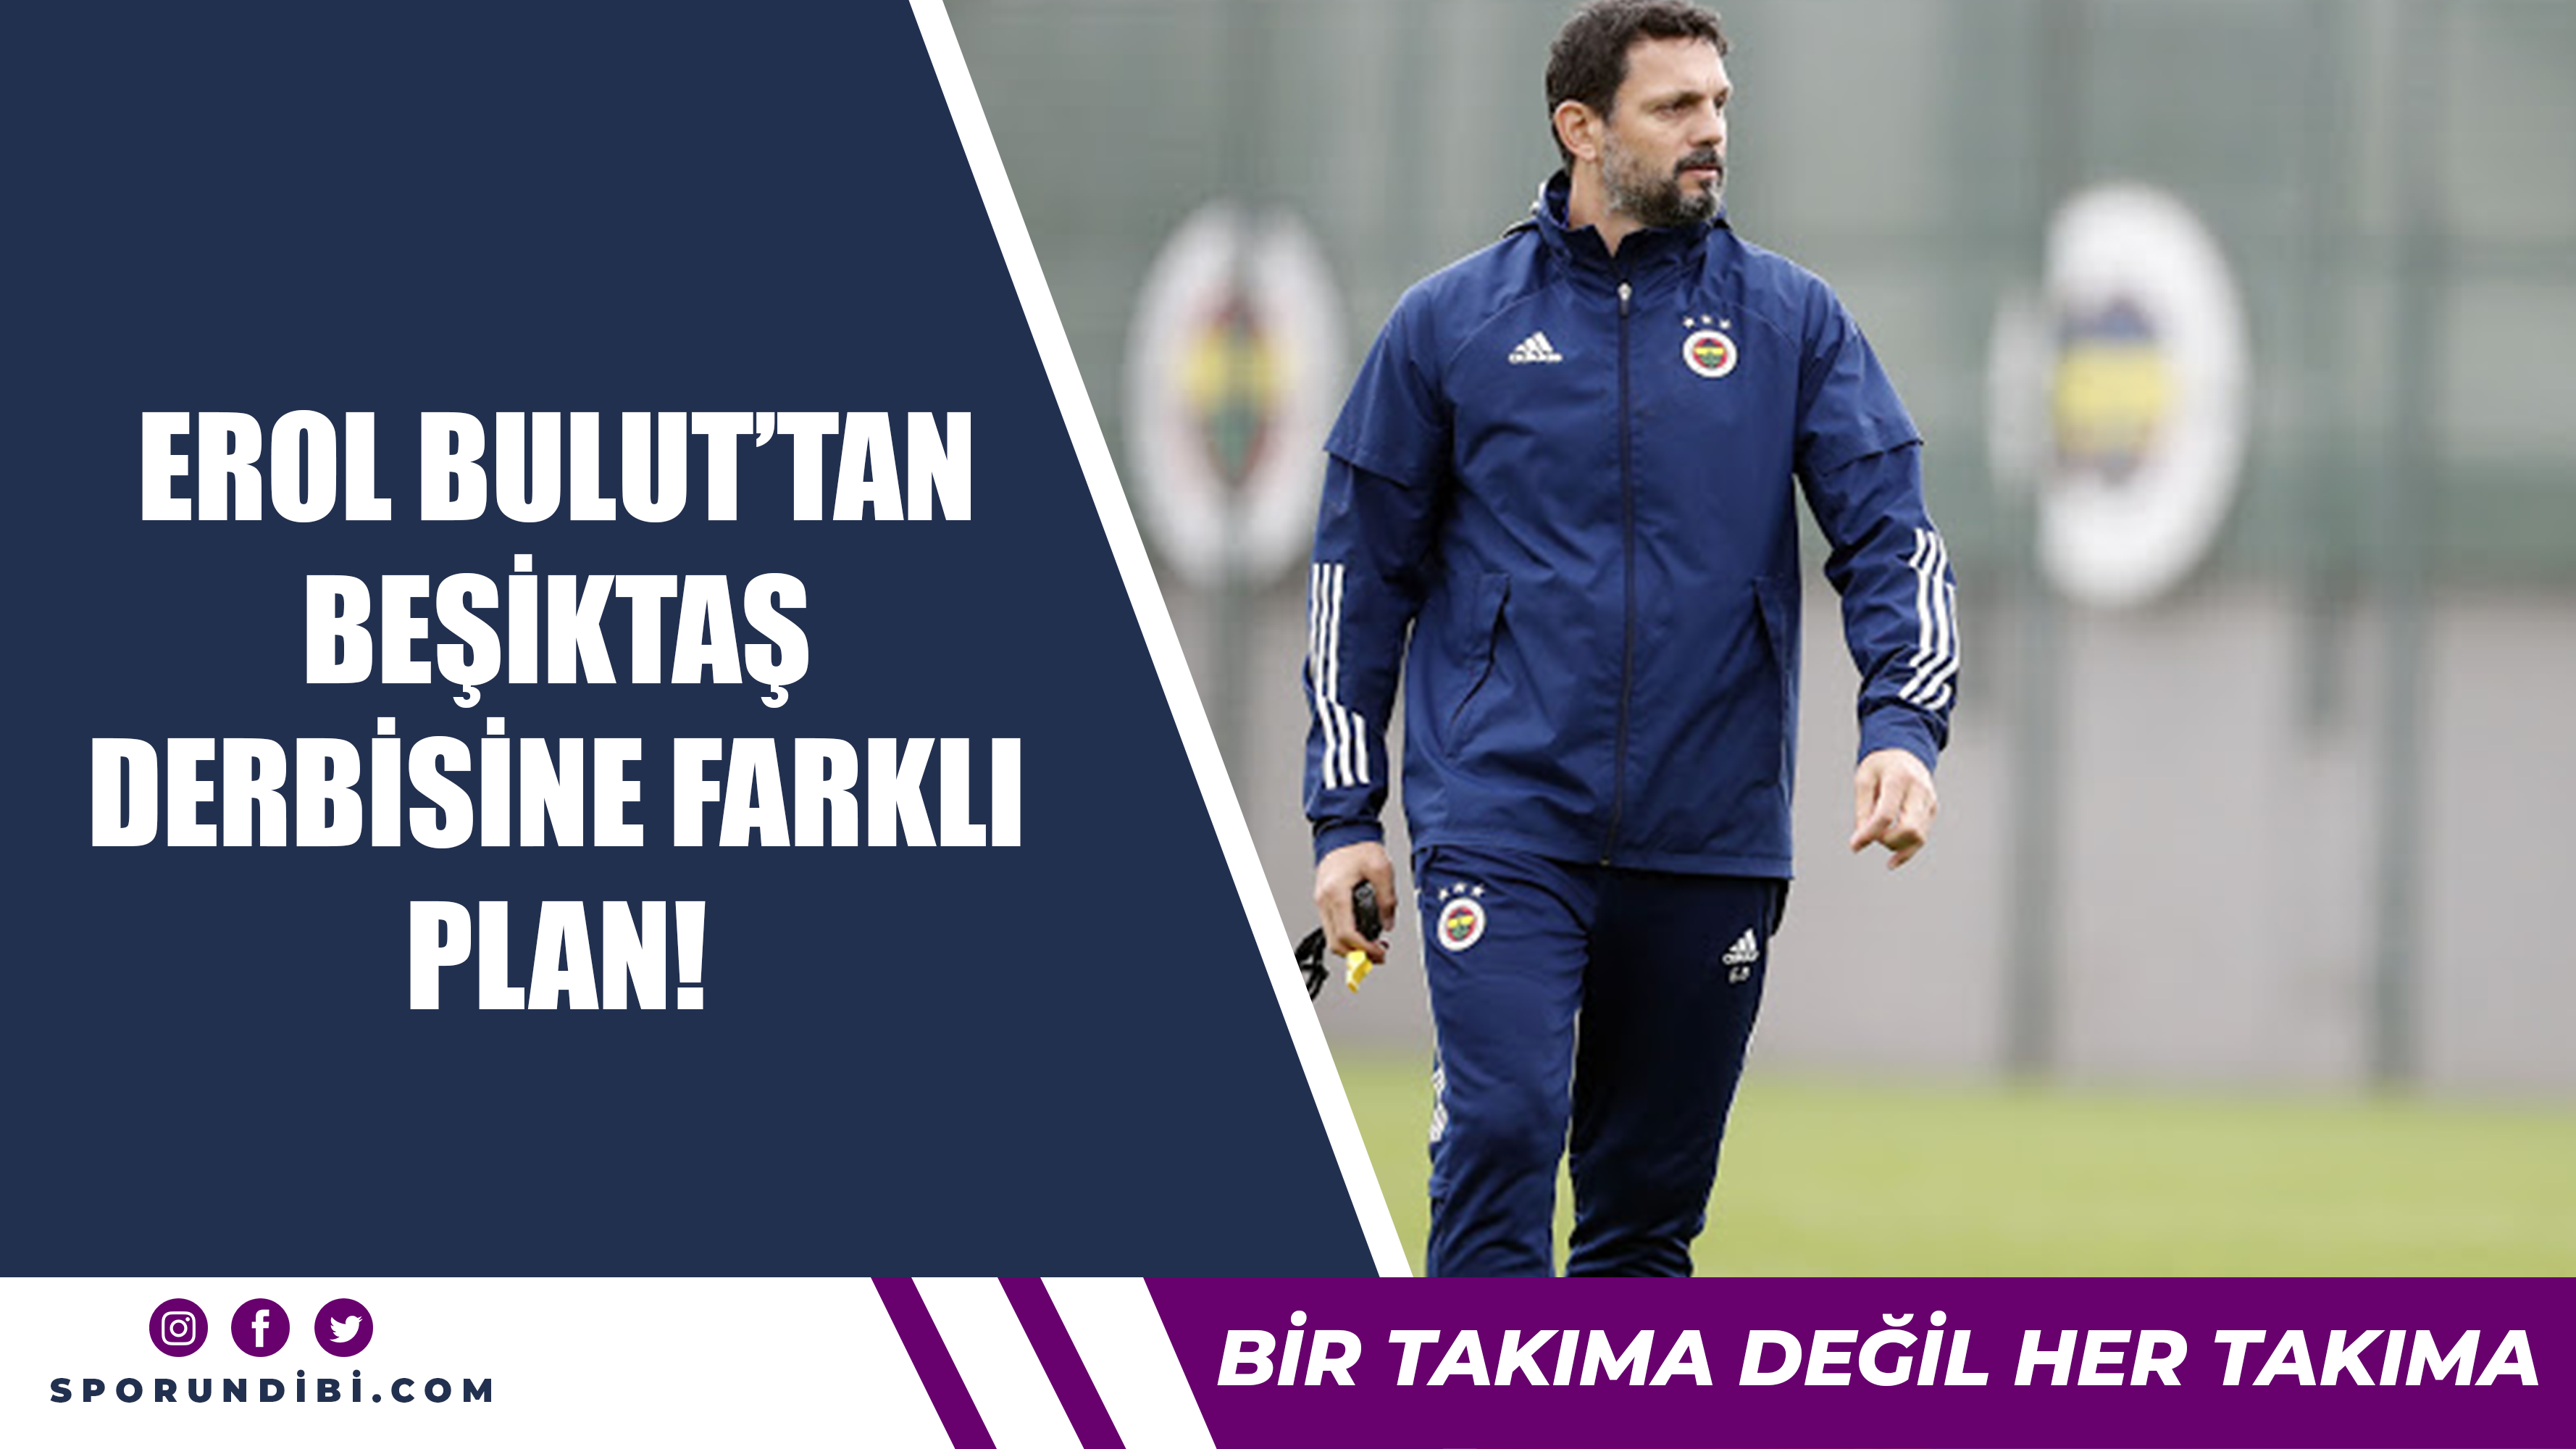 Erol Bulut'tan Beşiktaş derbisine farklı plan!